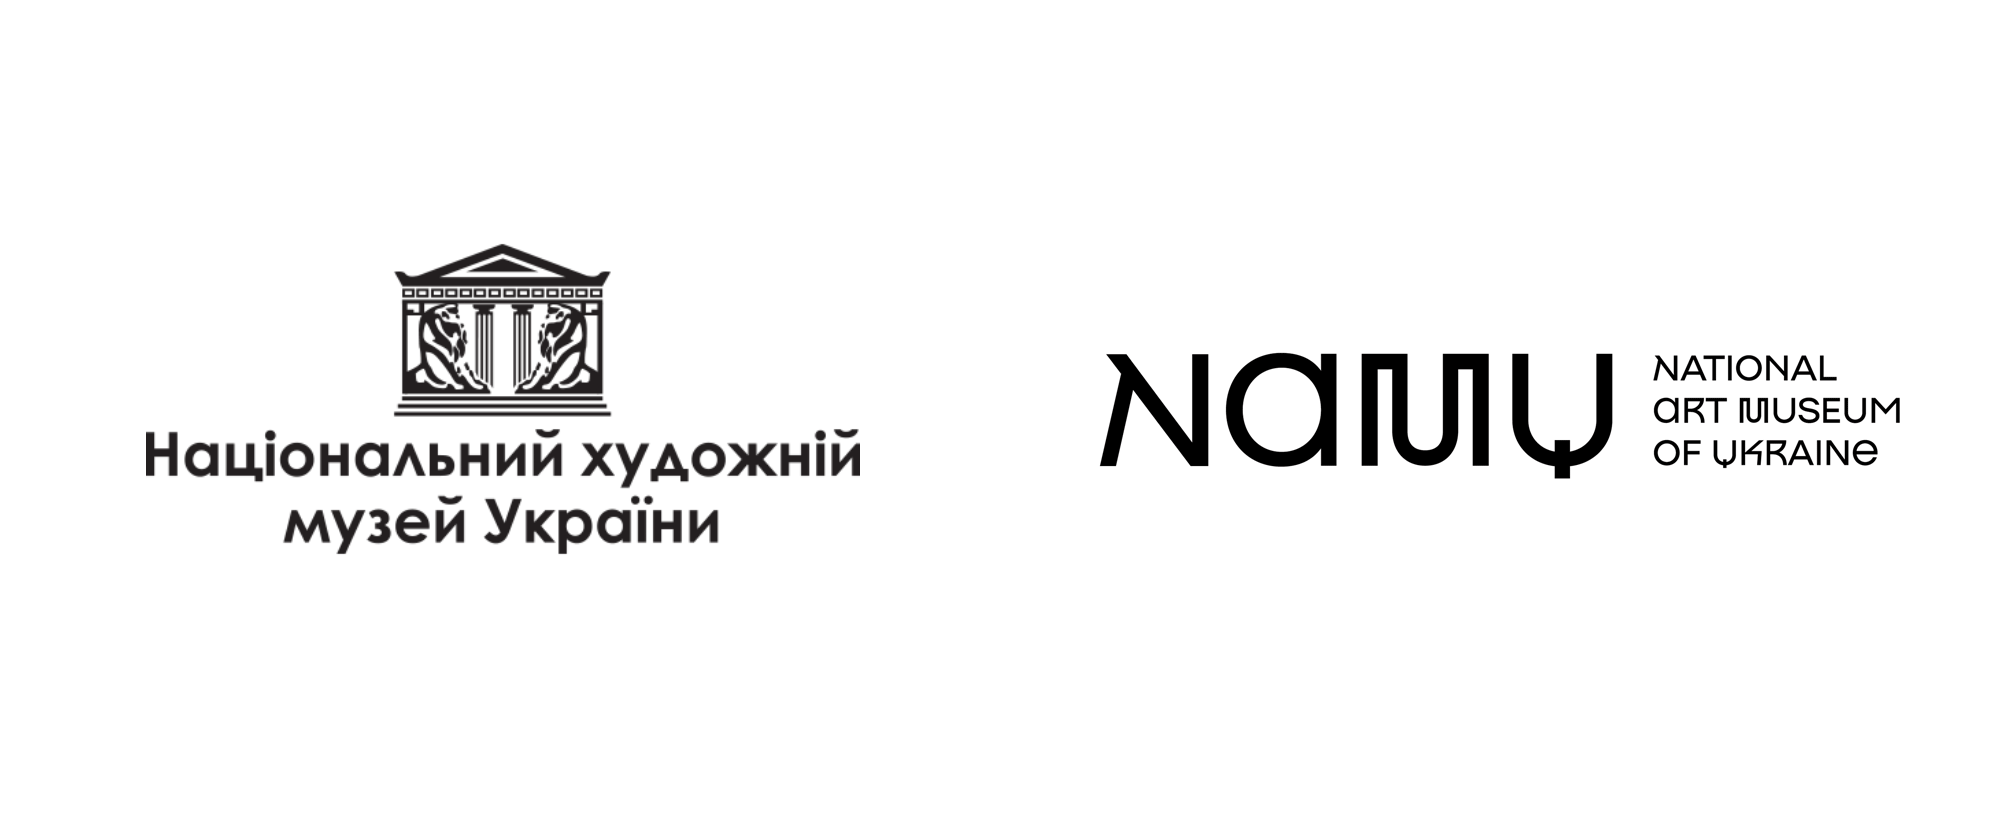 All-Black Y Logo - Brand New